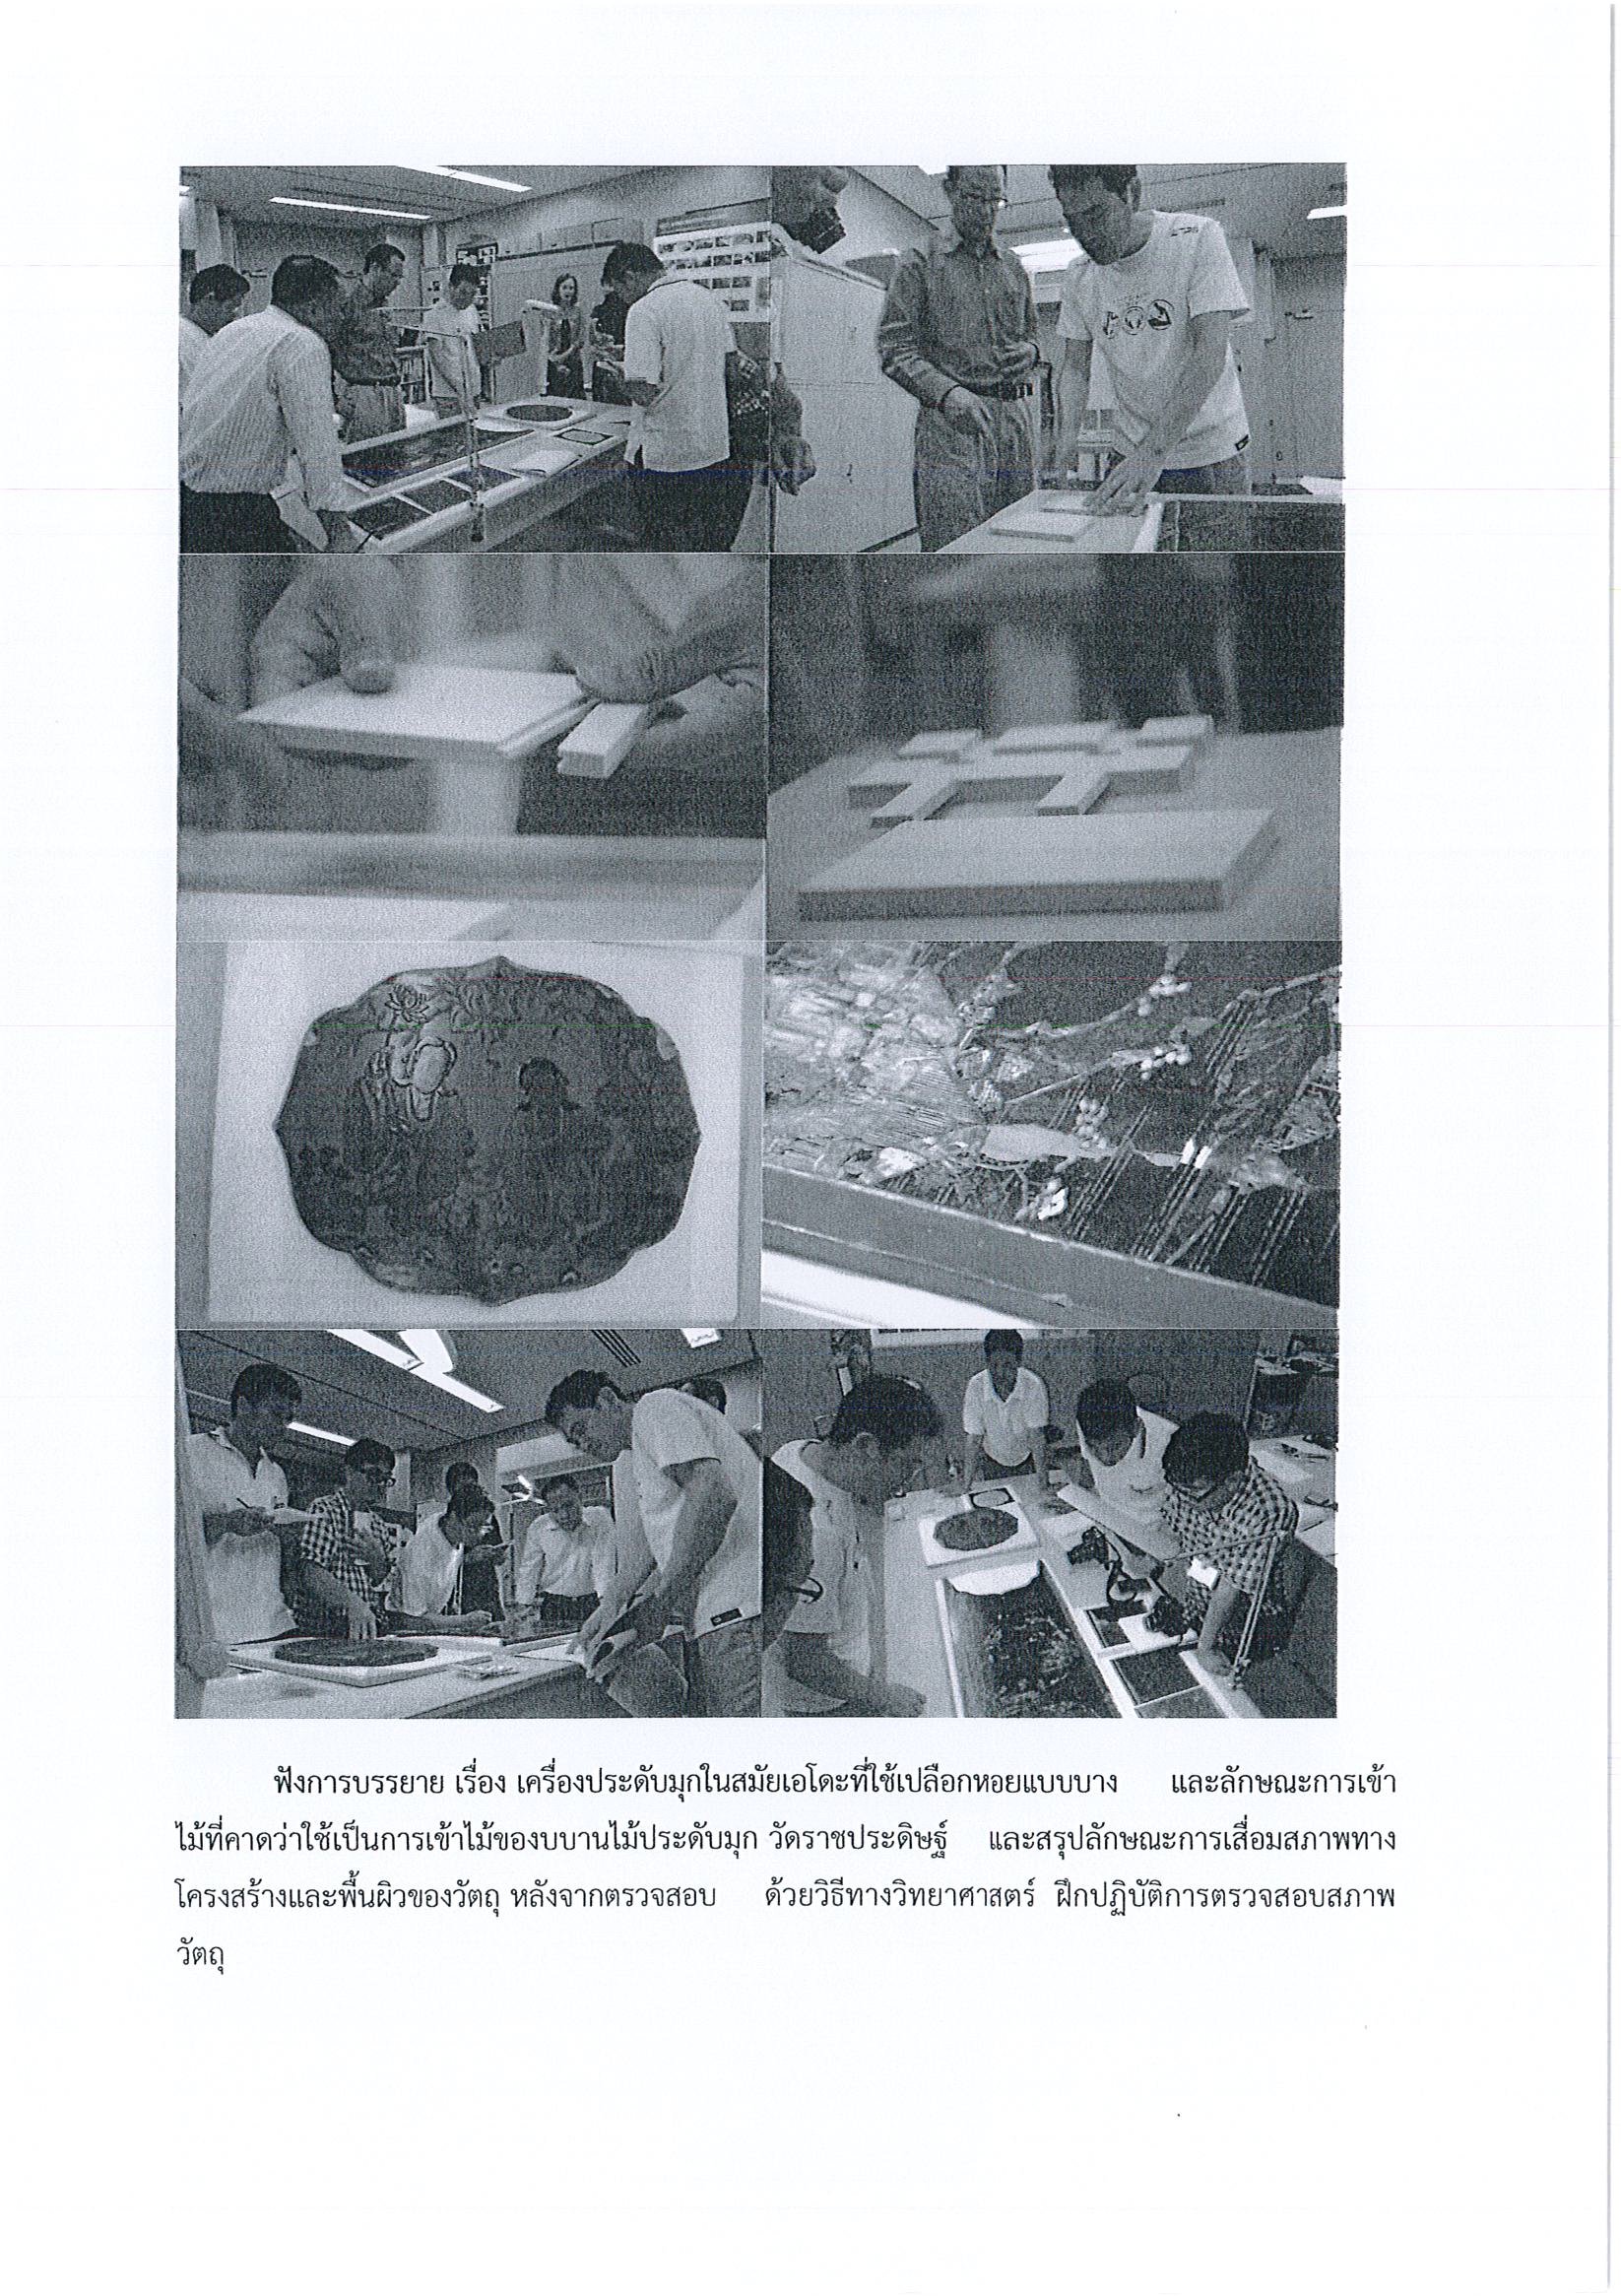 รายงานการเดินทางไปราชการ ณ ประเทศญี่ปุ่น ระหว่างวันที่ 15 – 27 กันยายน 2557 โครงการอบรมการอนุรักษ์บานไม้ประดับมุกศิลปะญี่ปุ่น ณ สถาบันวิจัยมรดกวัฒนธรรมแห่งชาติ